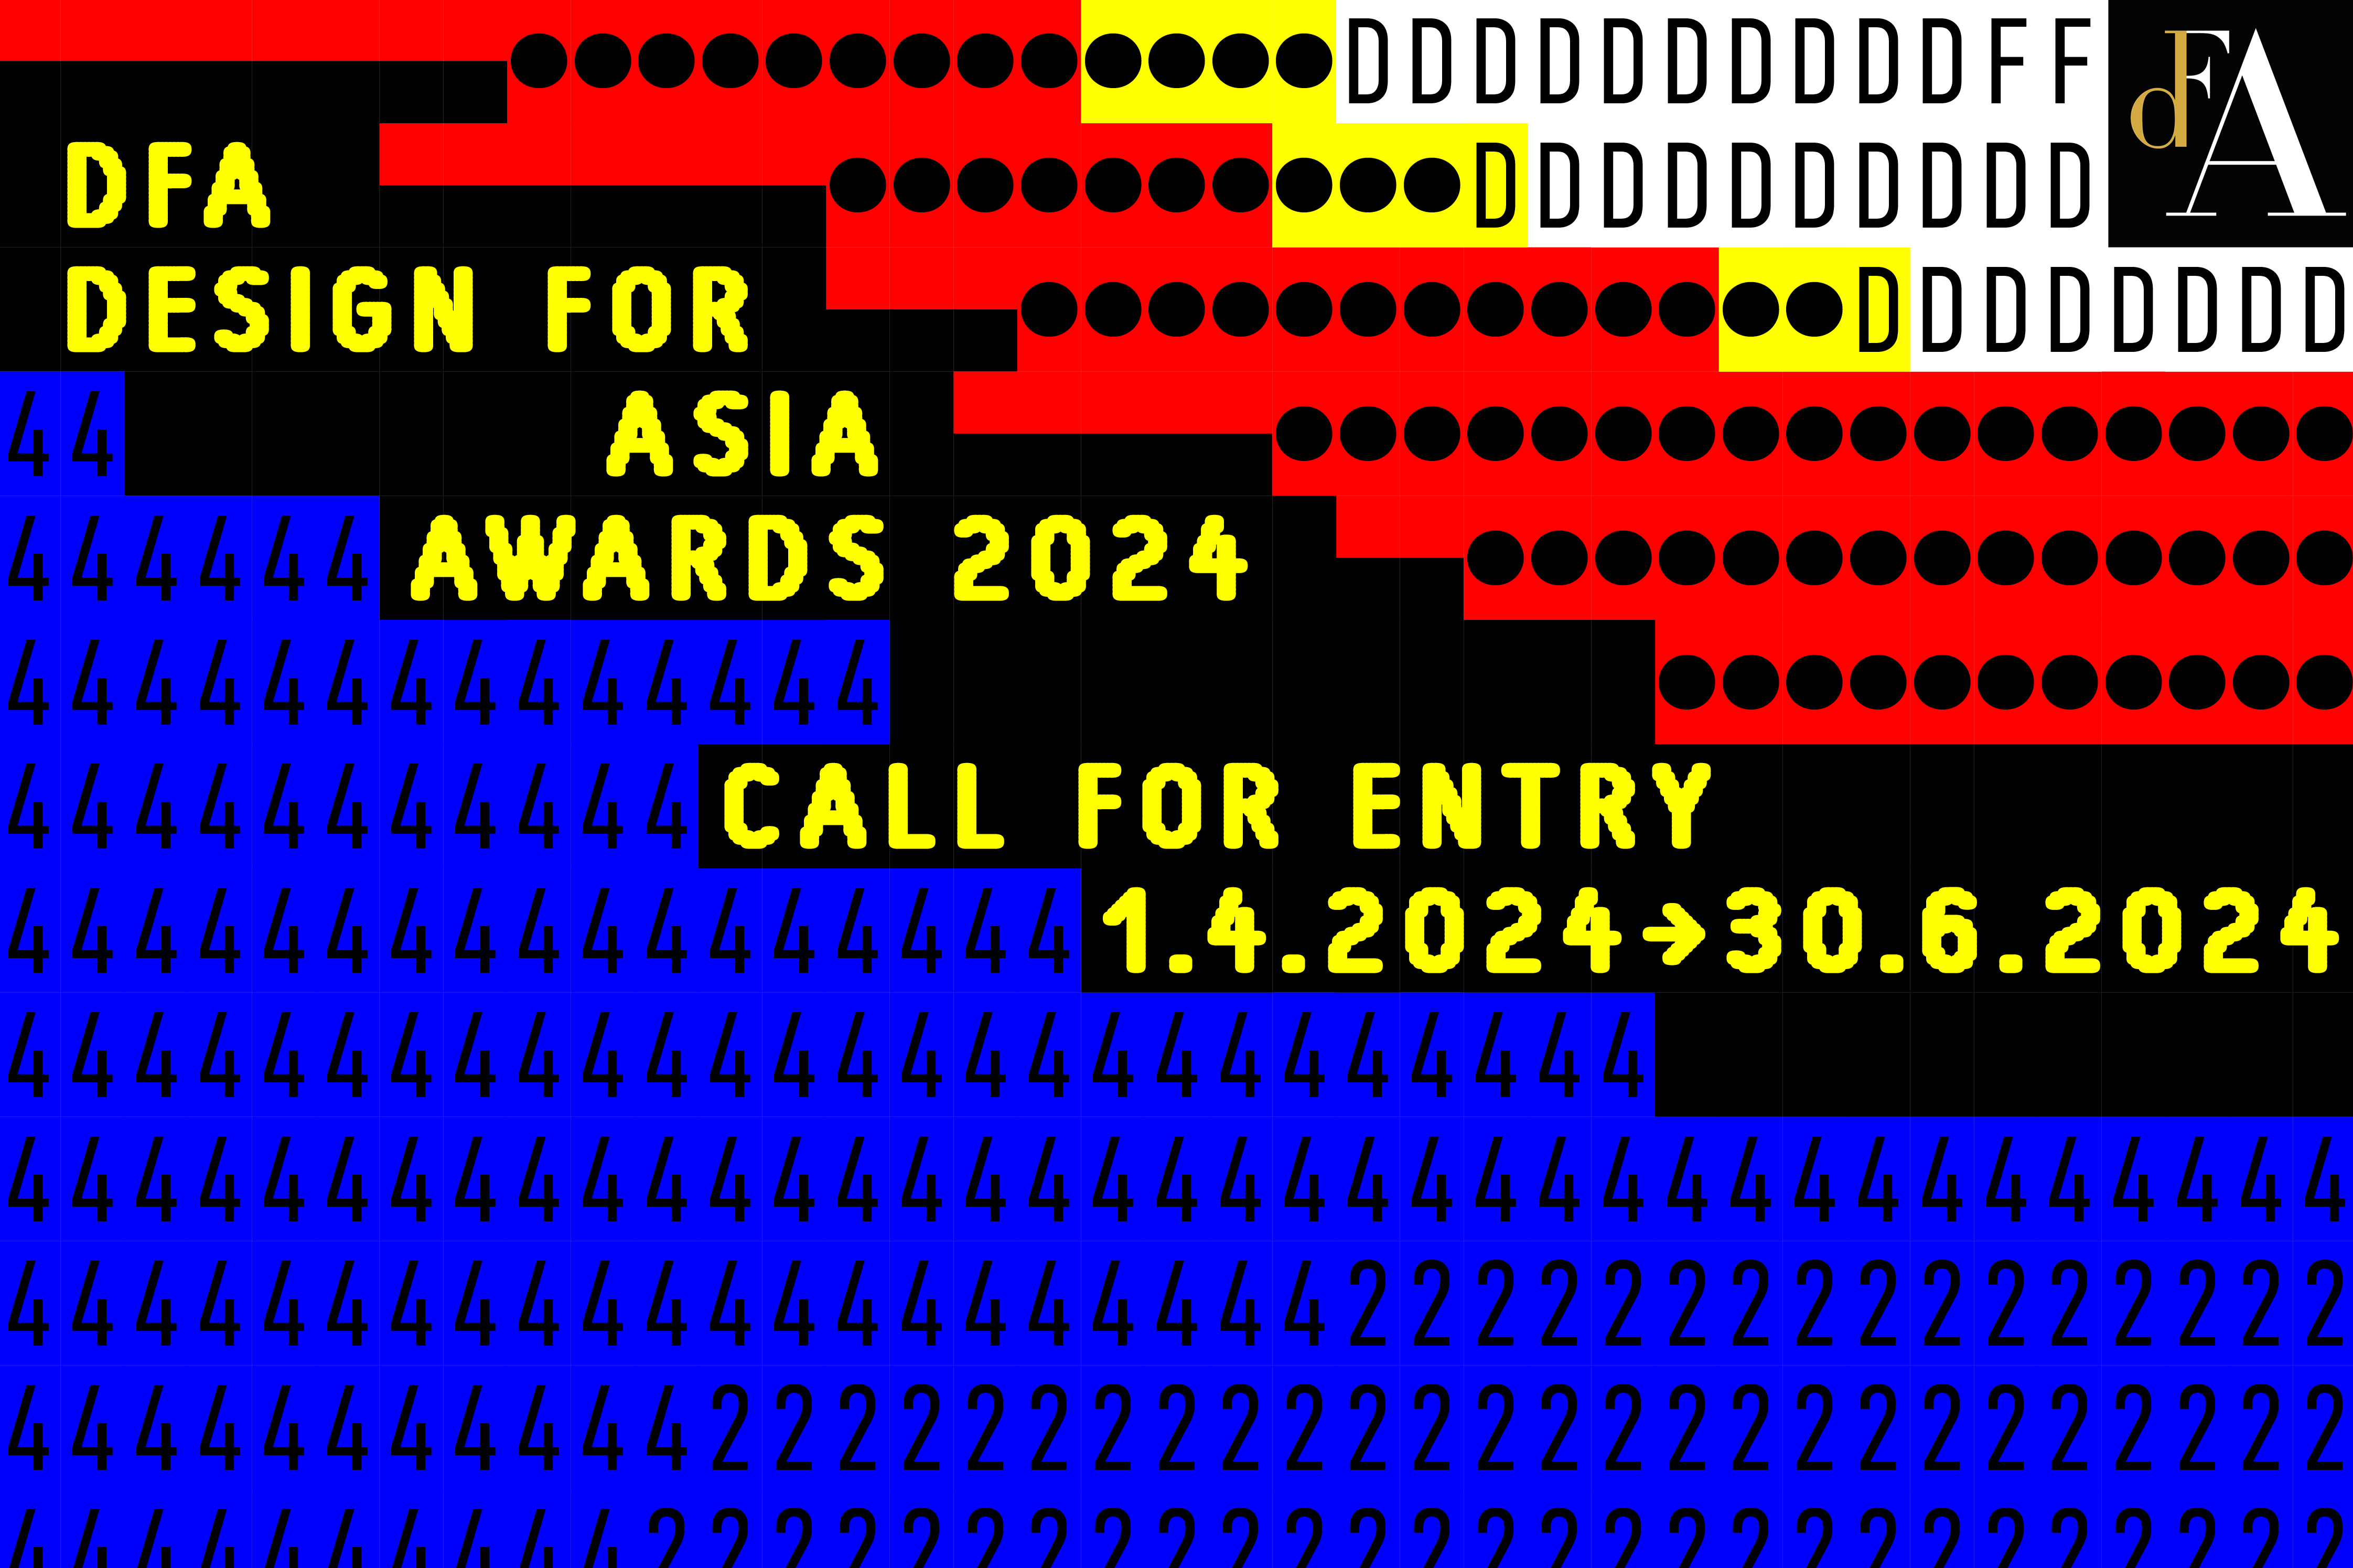 DFA Design for Asia Awards 2024